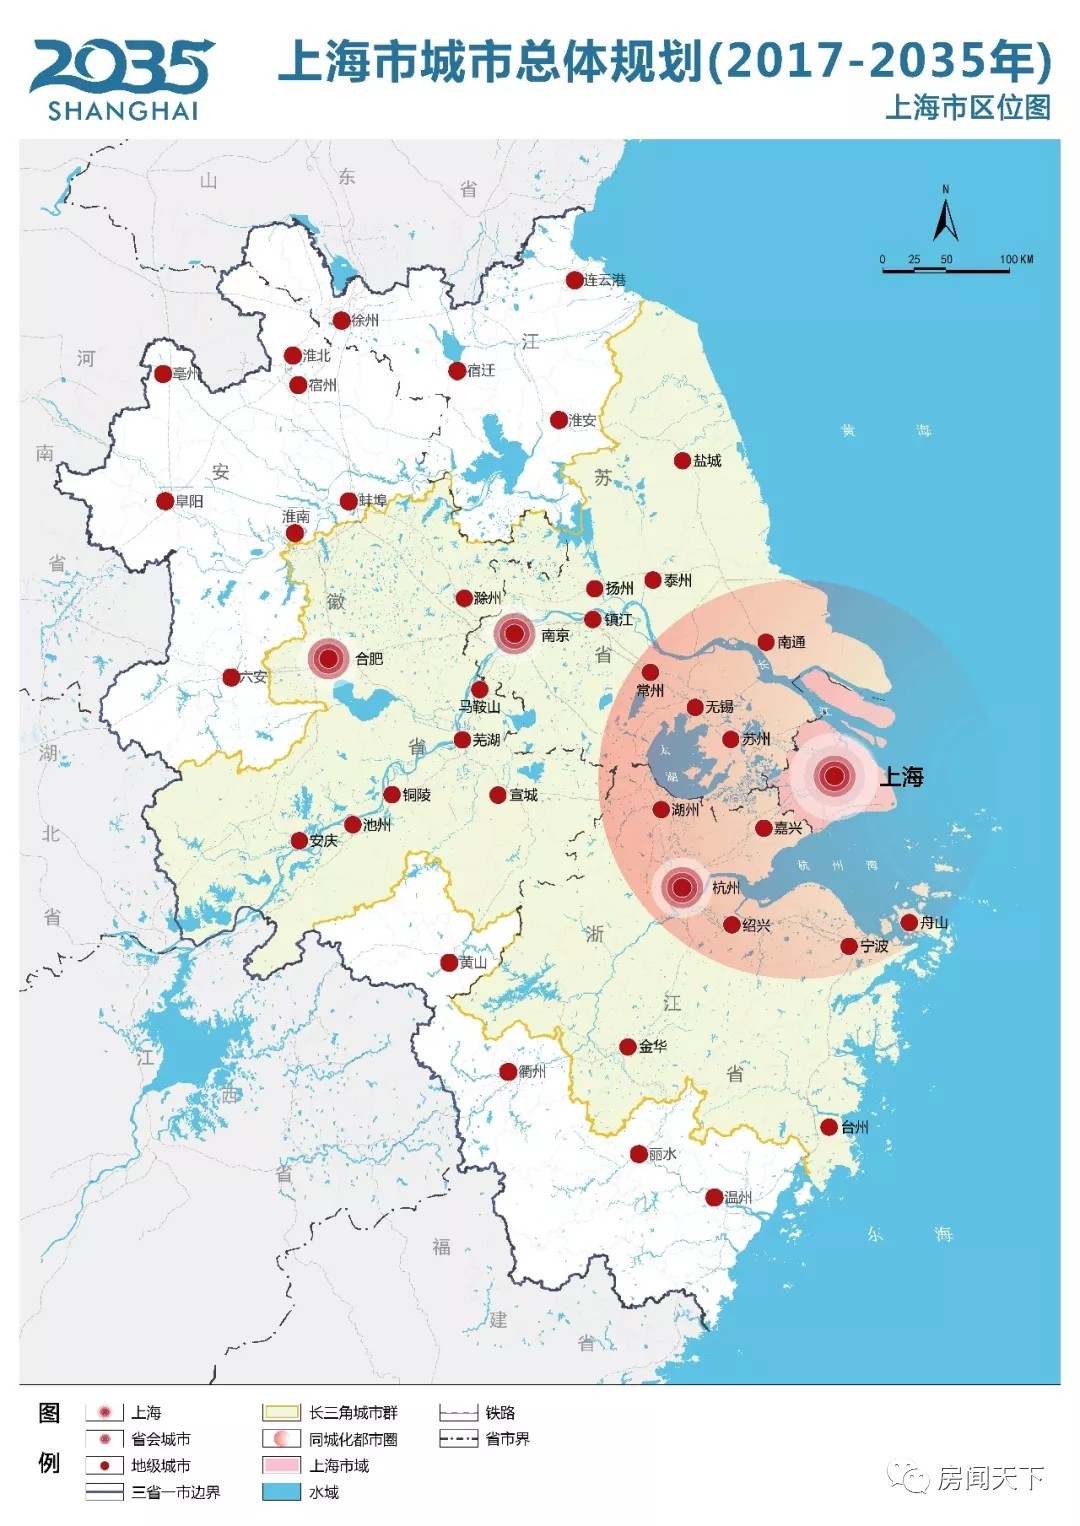 在这份规划中,明确了上海至2035年并远景展望至2050年的总体目标,发展